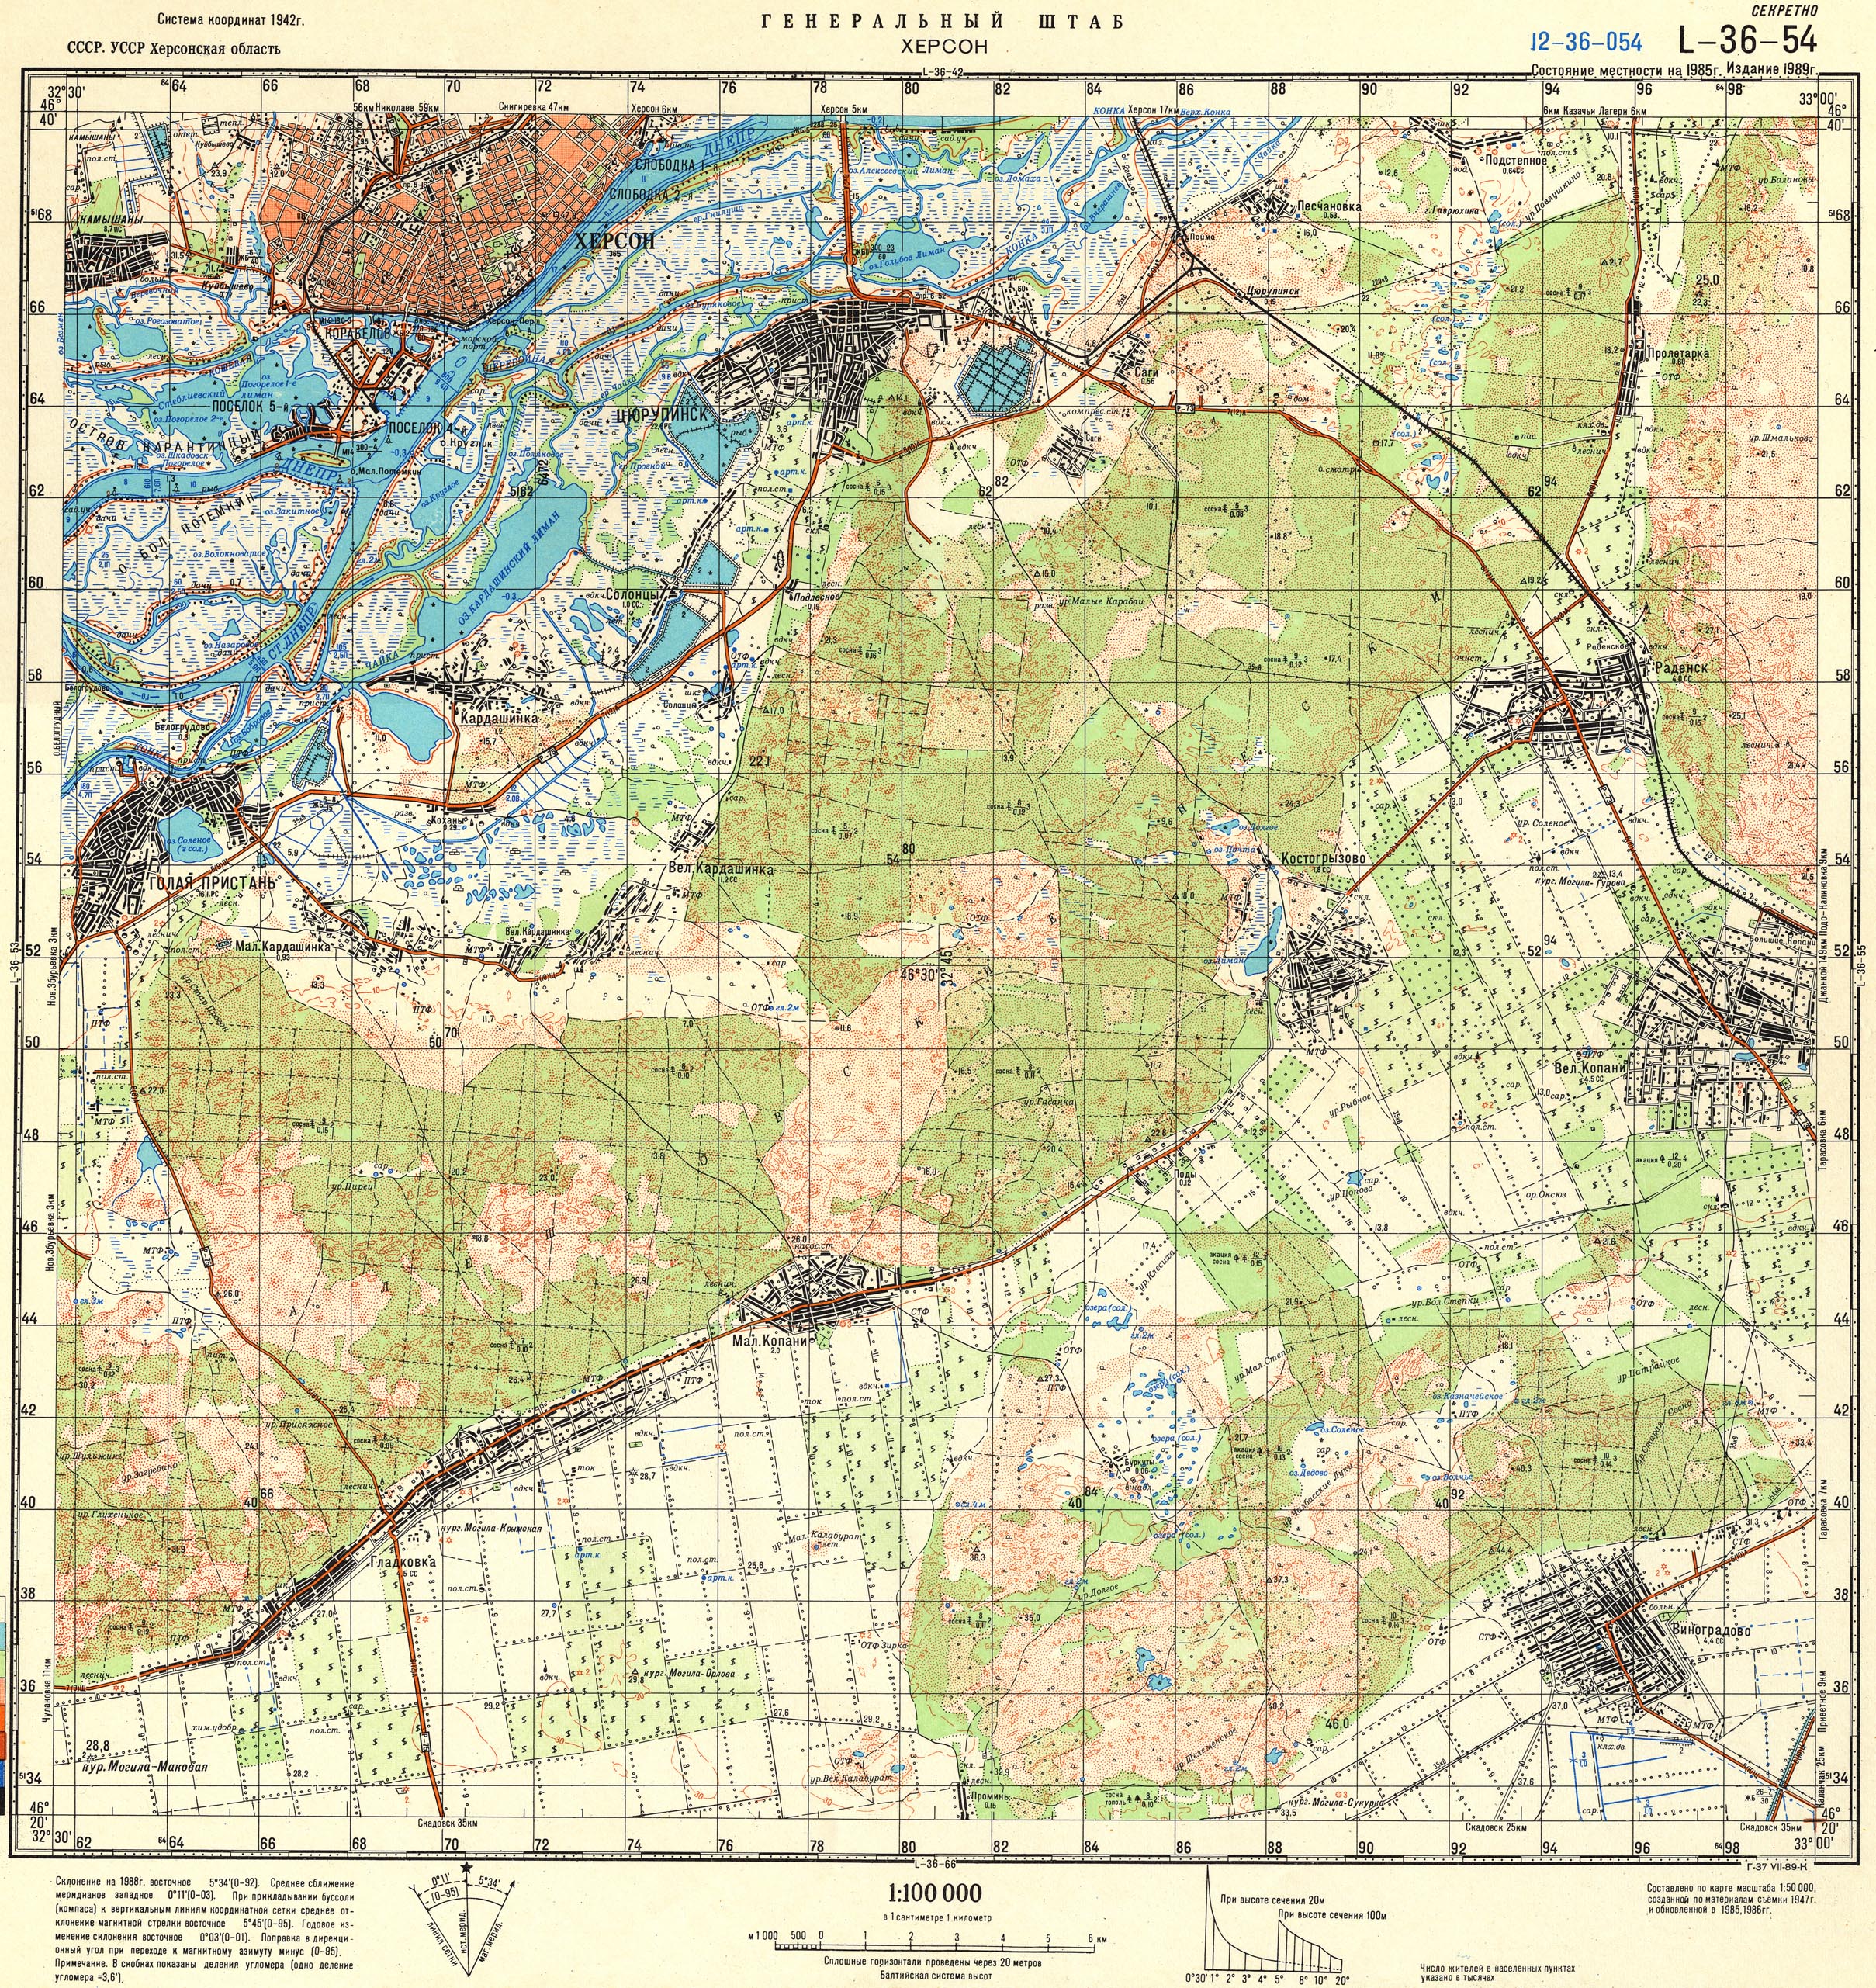 Топографические карты Генштаба / Карты листа L-36 (Одесса) / Карты масштаба 1:100000 (километровки) / Лист Q-37-54, Херсон